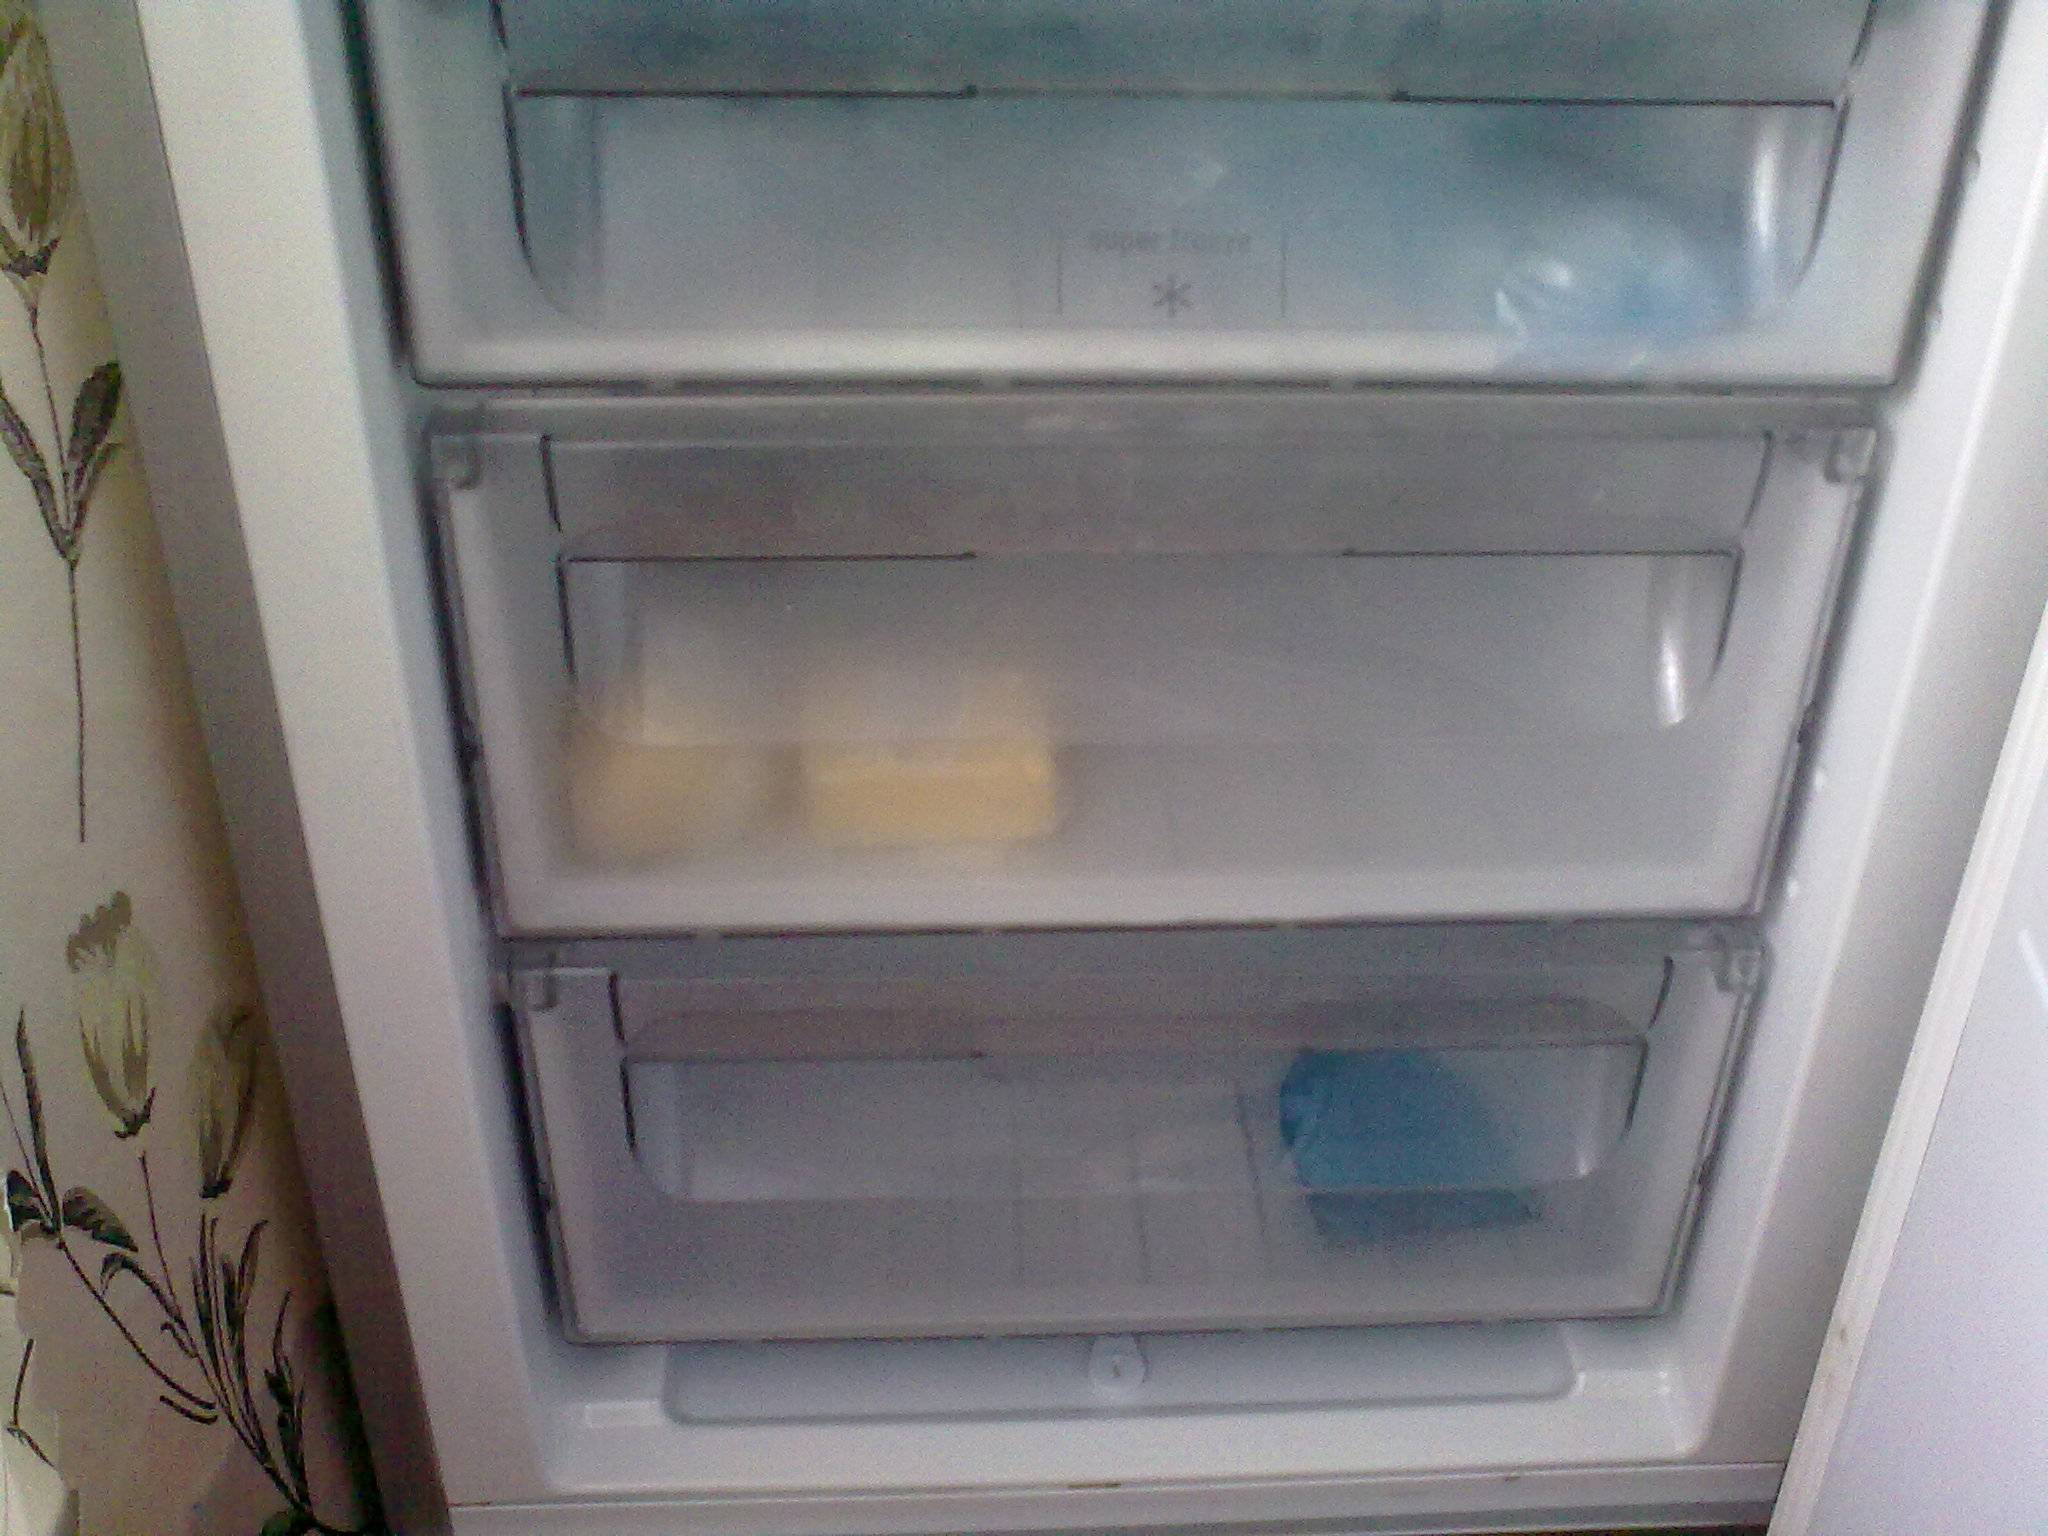 Не работает верхняя камера холодильника - причины, что делать